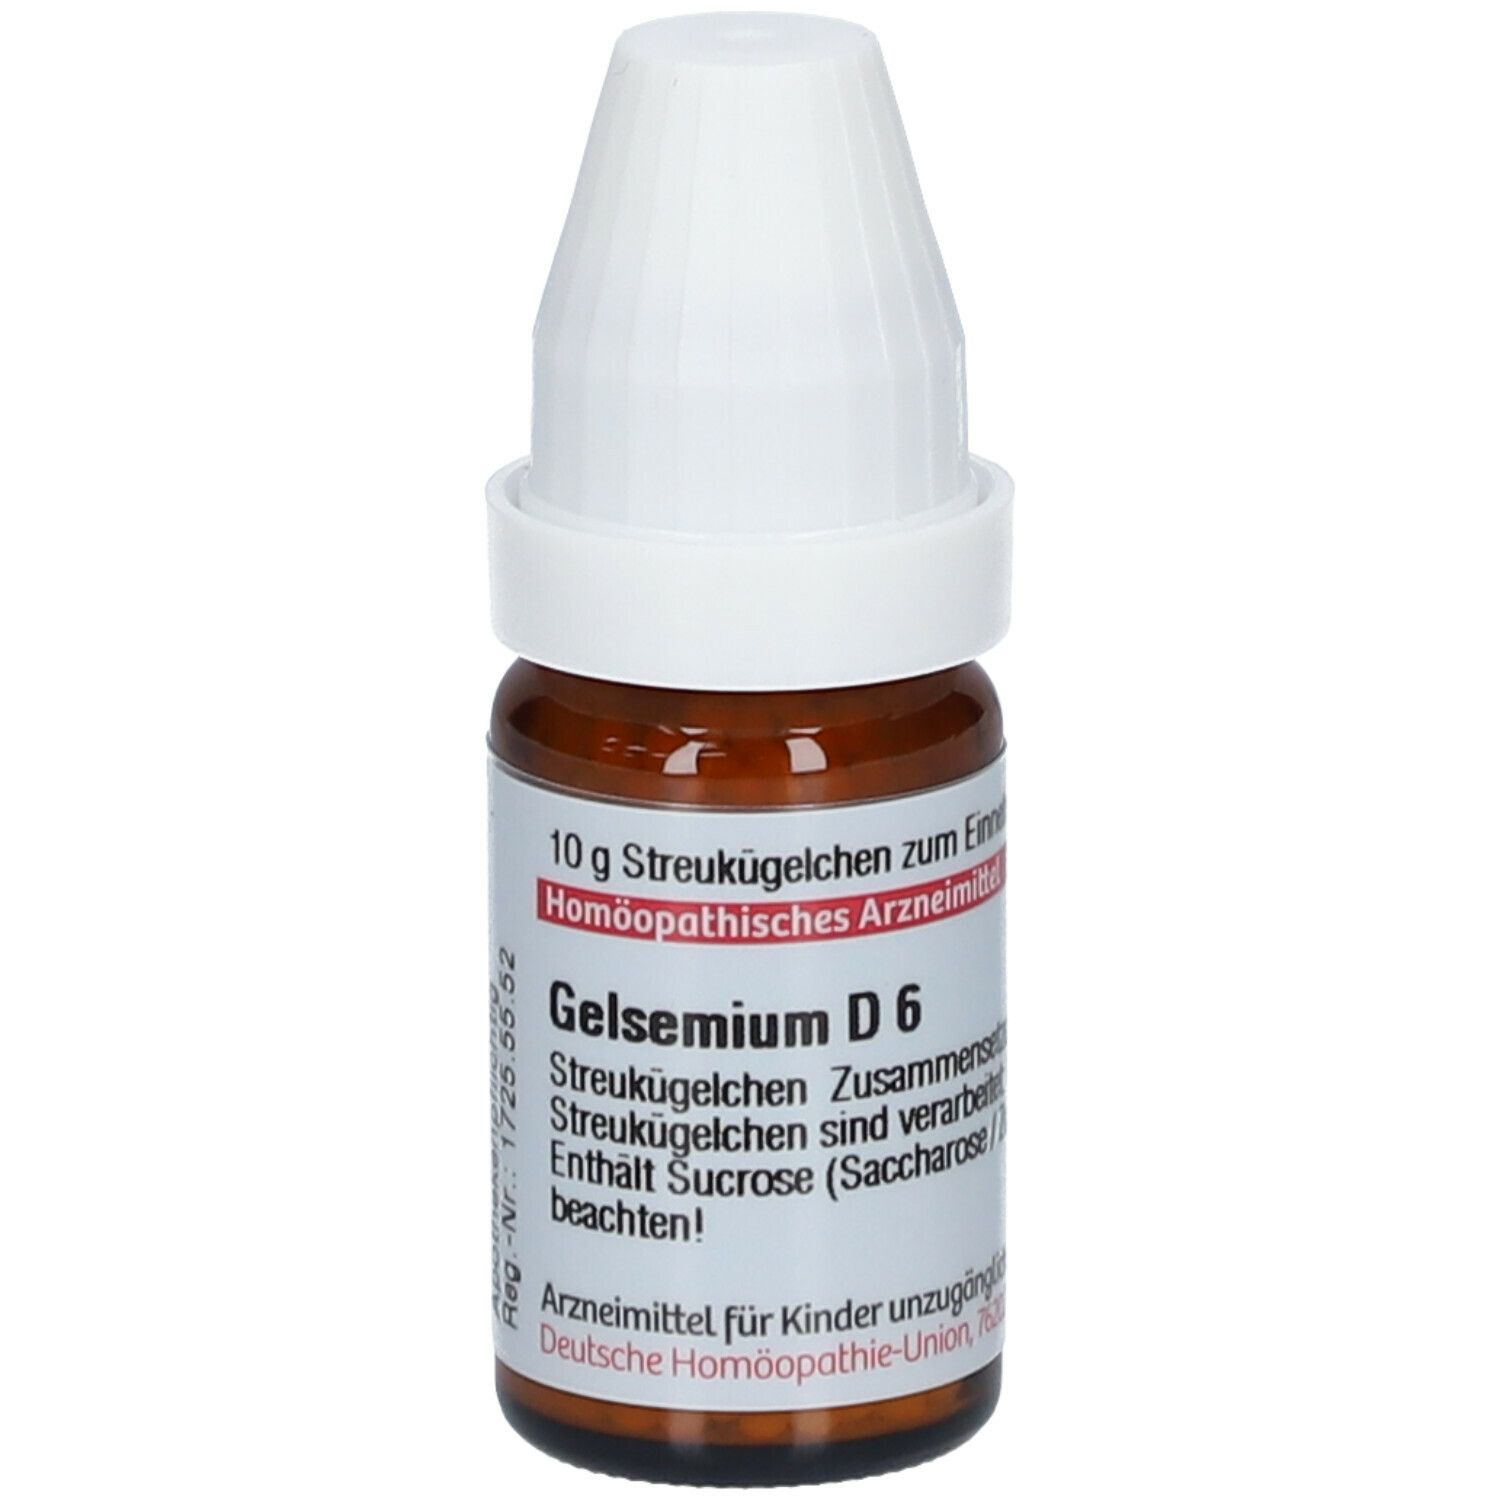 DHU Gelsemium D6